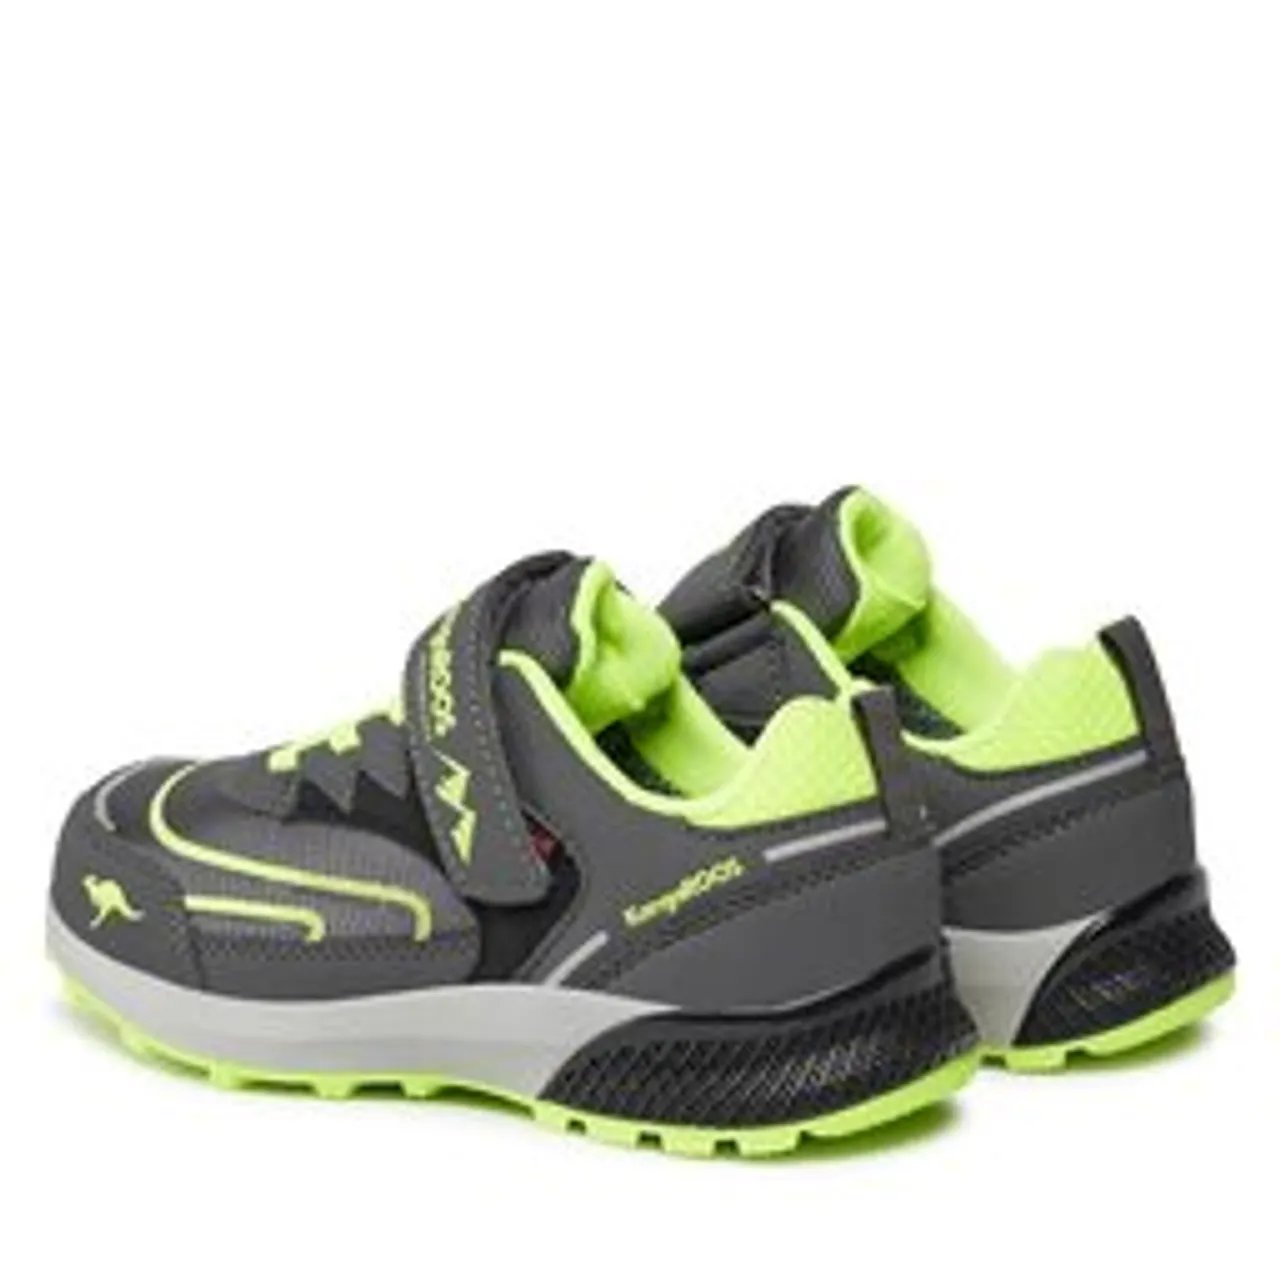 Sneakers KangaRoos K-Hk Teak Low Ev Rtx 18942 000 2014 Steel Grey/Lime